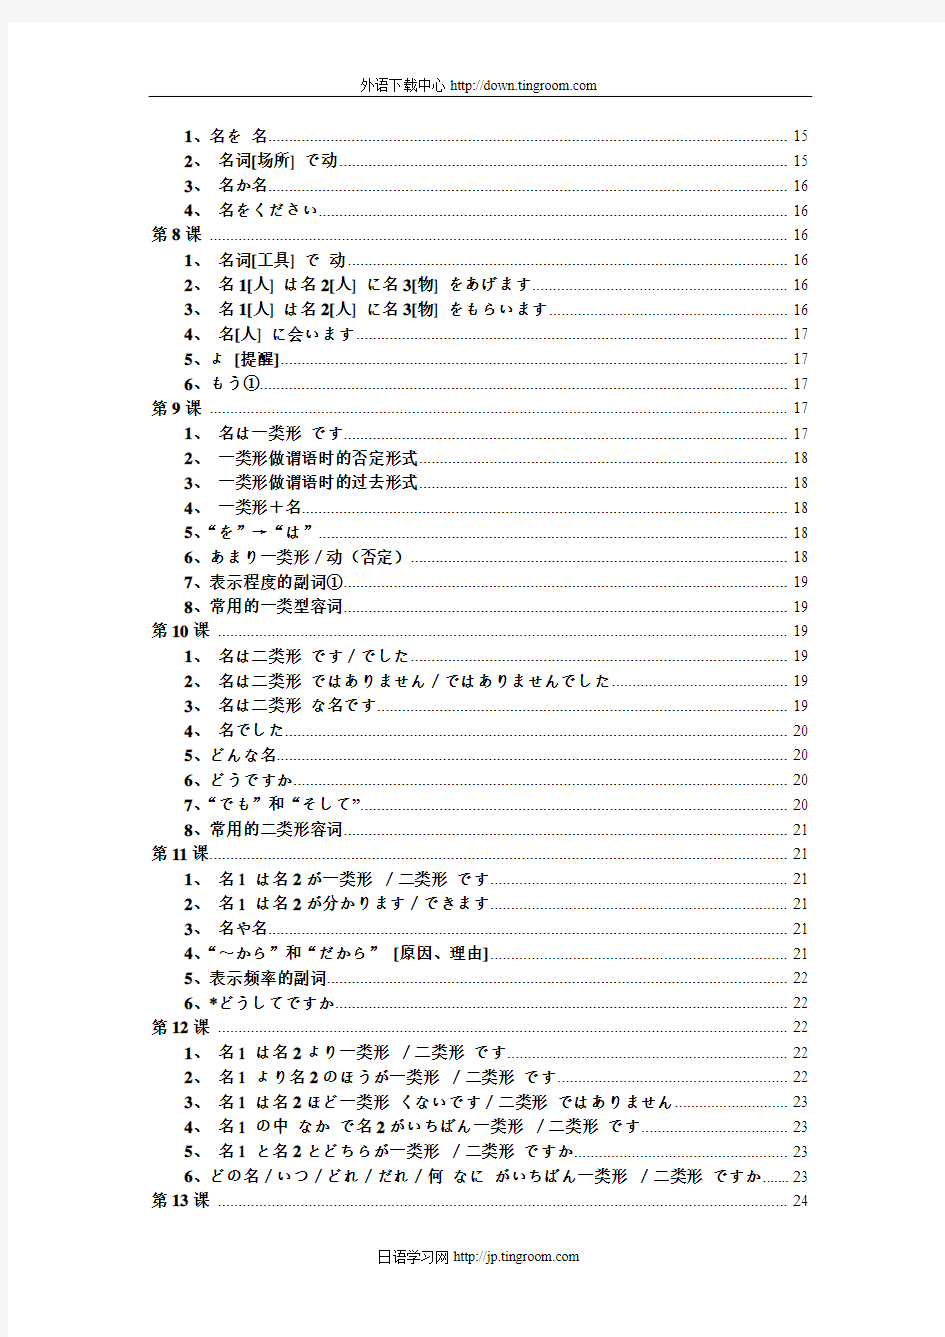 新版标准日本语-初级-语法汇总